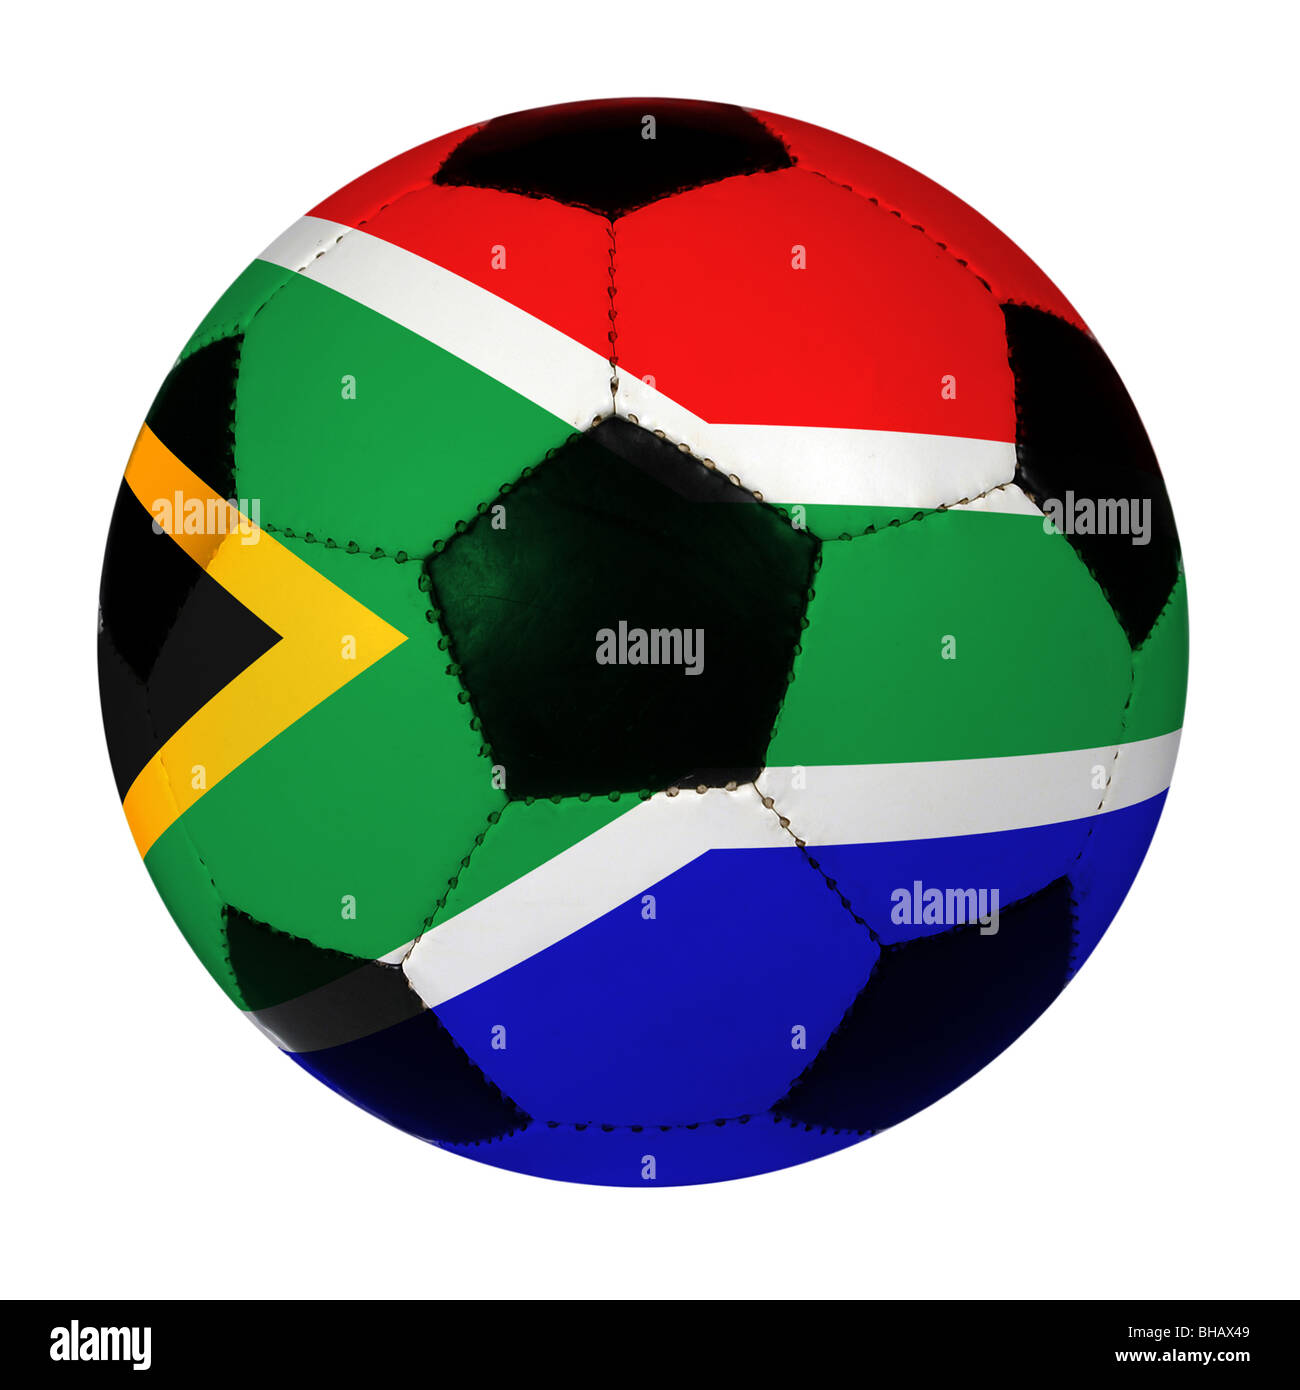 Ballon de soccer avec drapeau sud-africain - chemin de détourage autour de ballon Banque D'Images